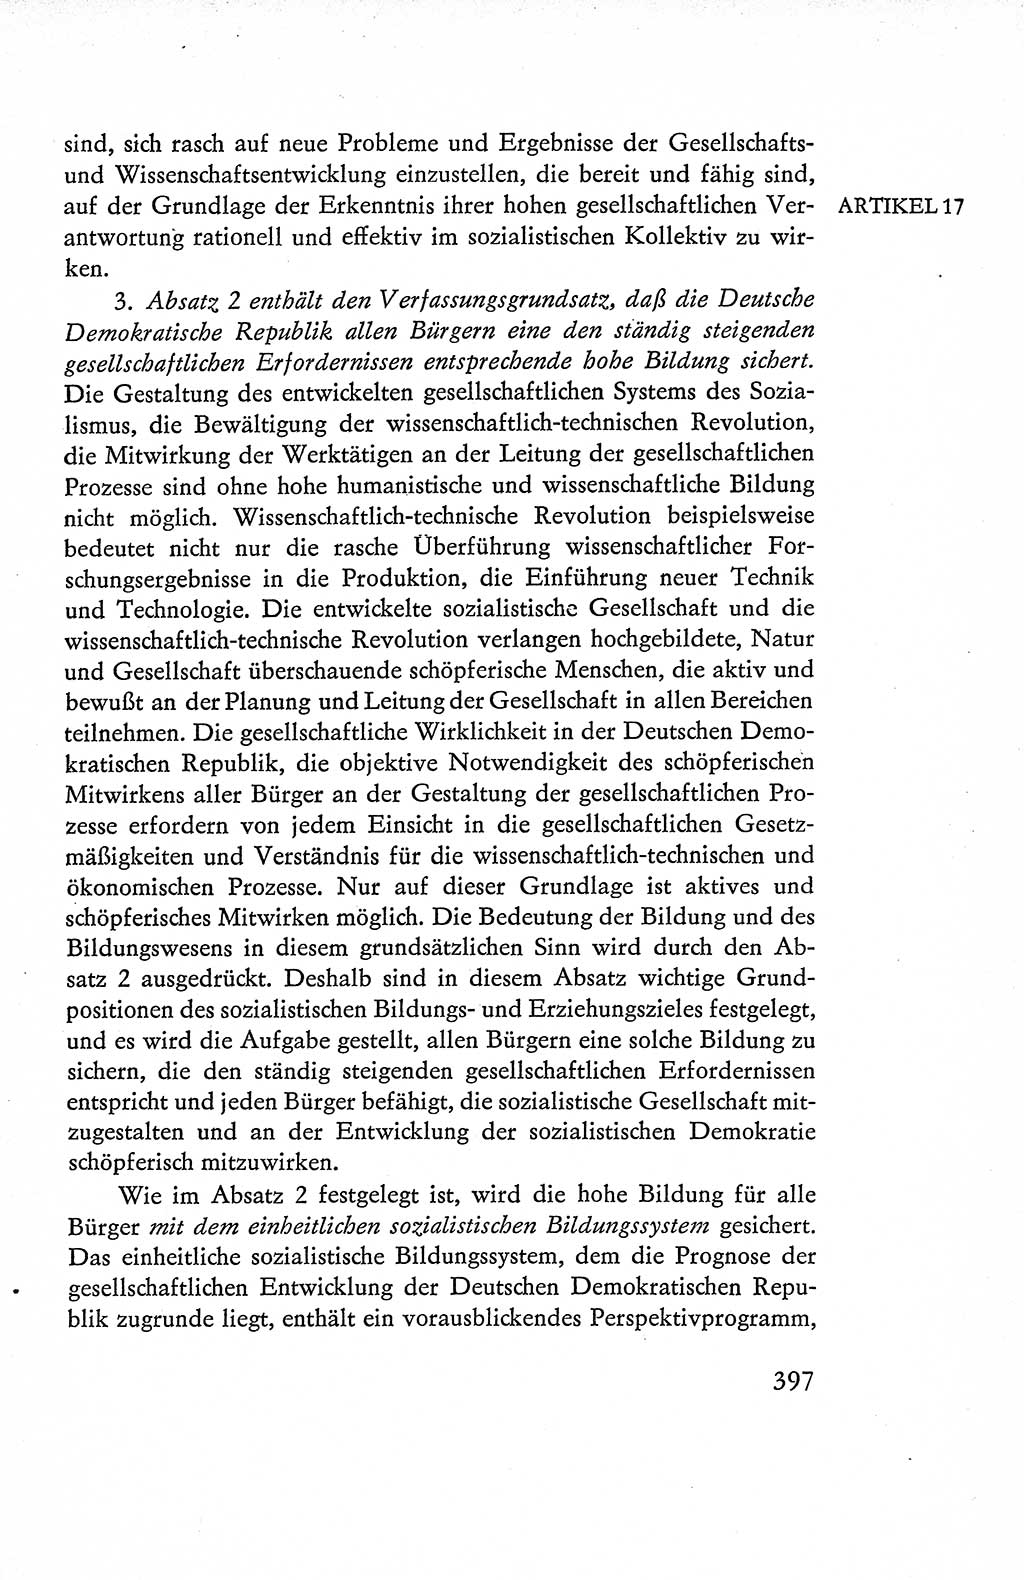 Verfassung der Deutschen Demokratischen Republik (DDR), Dokumente, Kommentar 1969, Band 1, Seite 397 (Verf. DDR Dok. Komm. 1969, Bd. 1, S. 397)